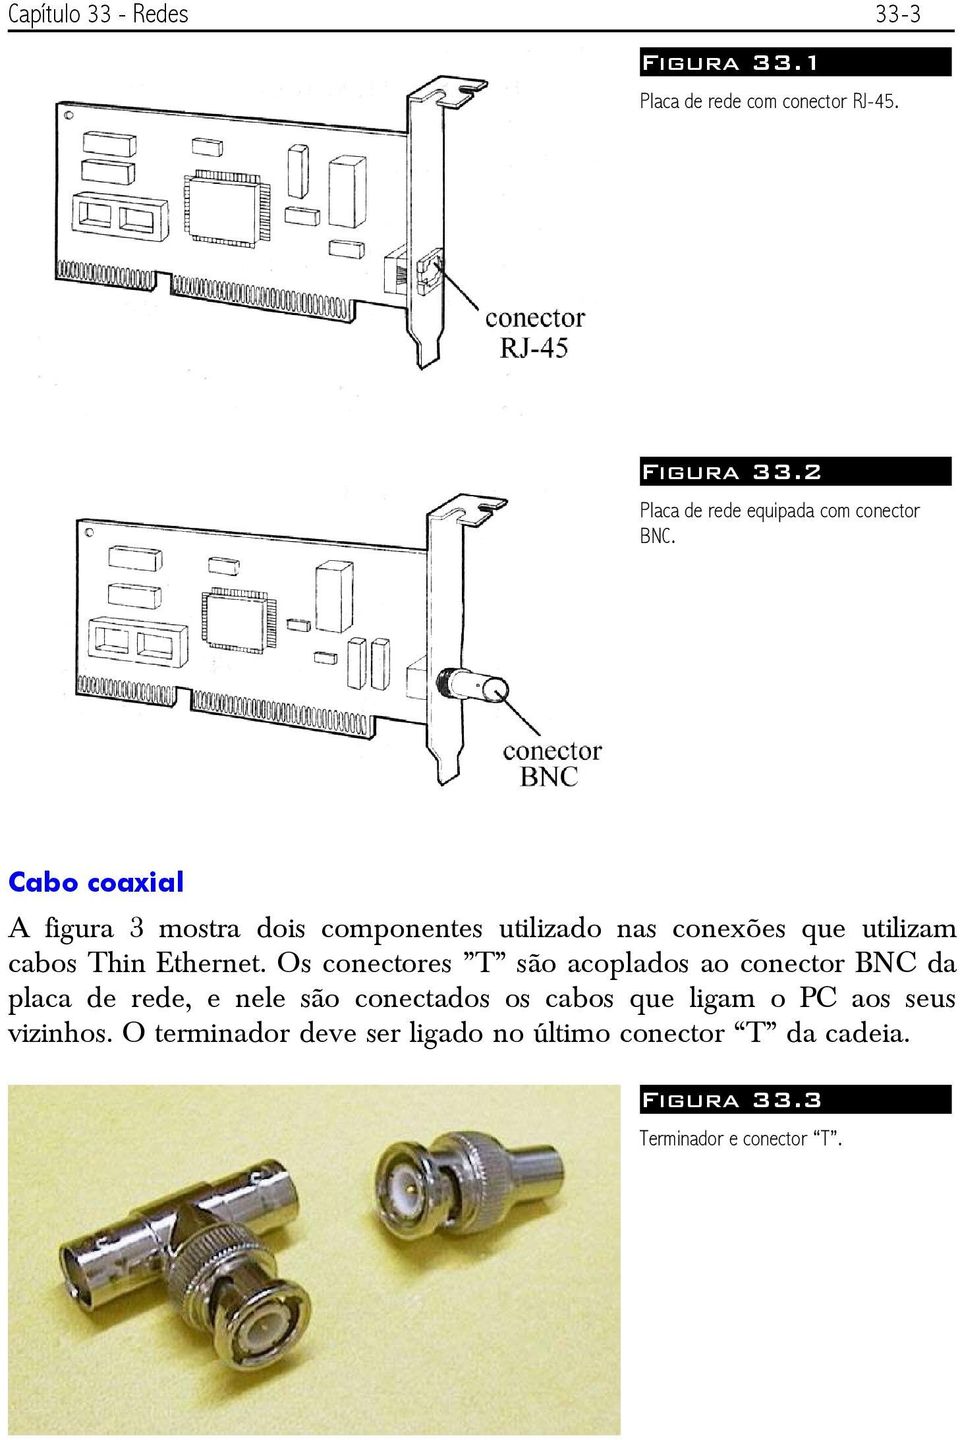 Os conectores T são acoplados ao conector BNC da placa de rede, e nele são conectados os cabos que ligam o PC aos